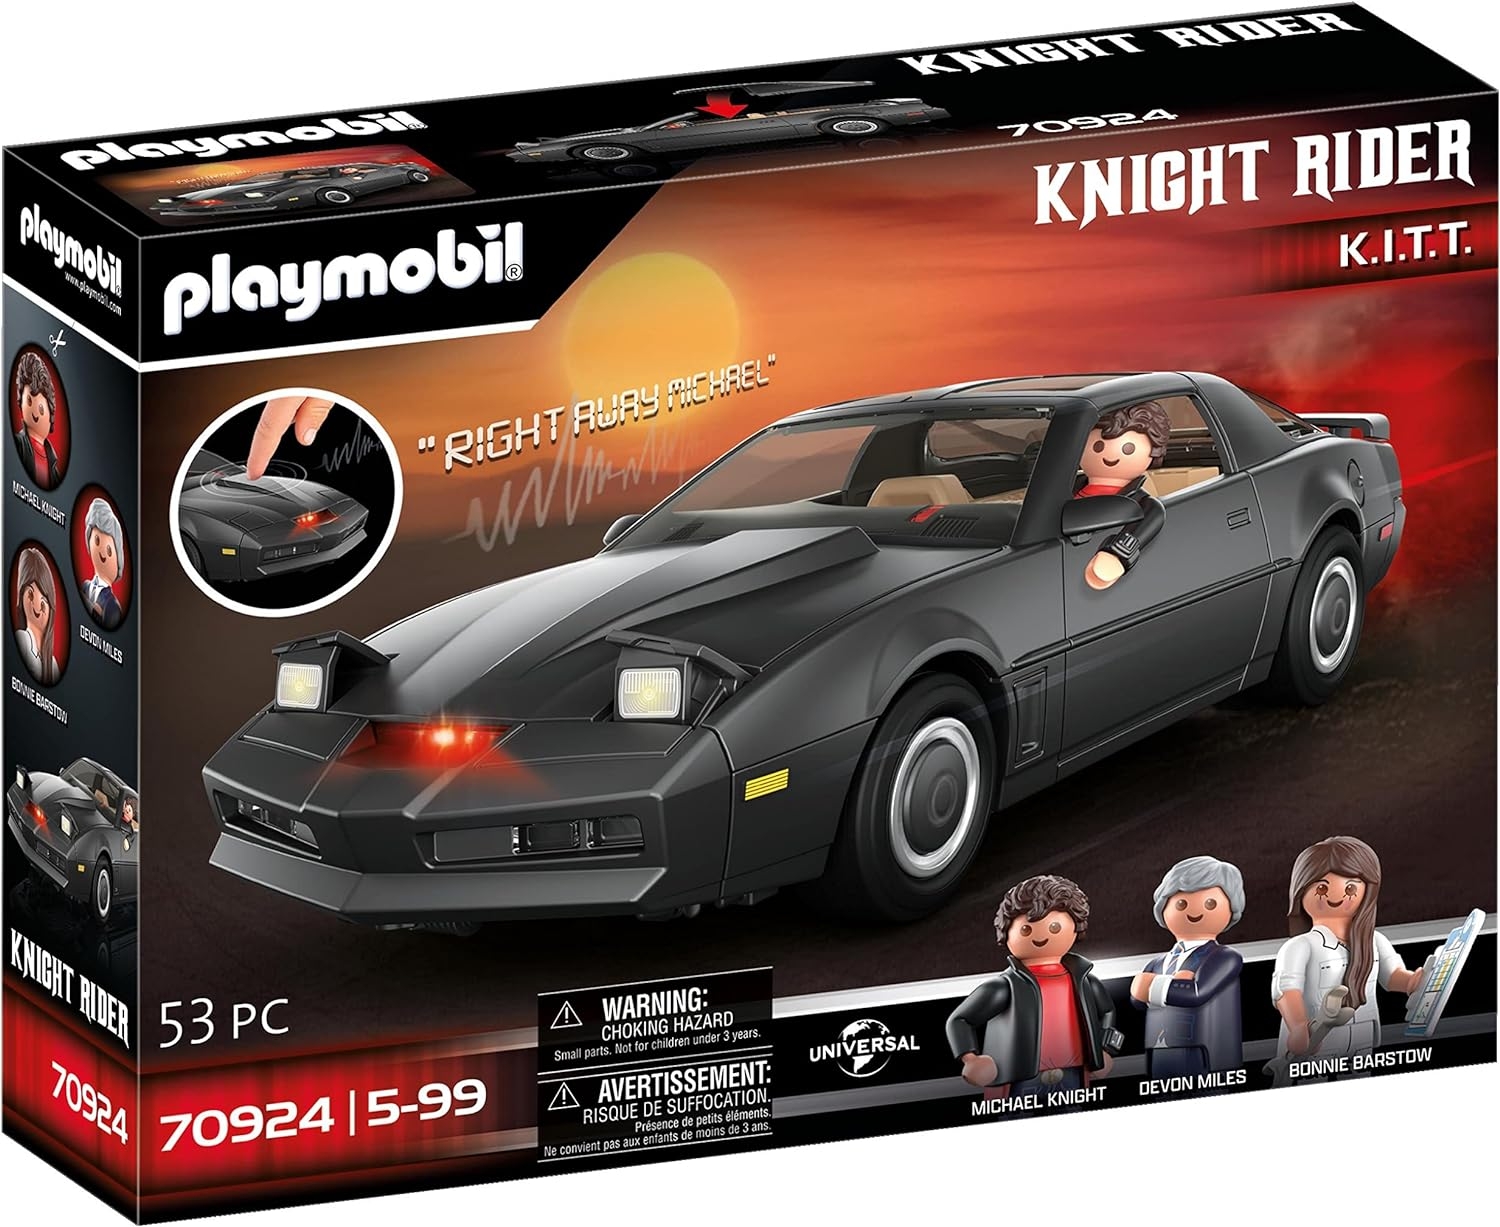 Playmobil%2070924%20Knight%20Rider%20-%20K.I.T.T.